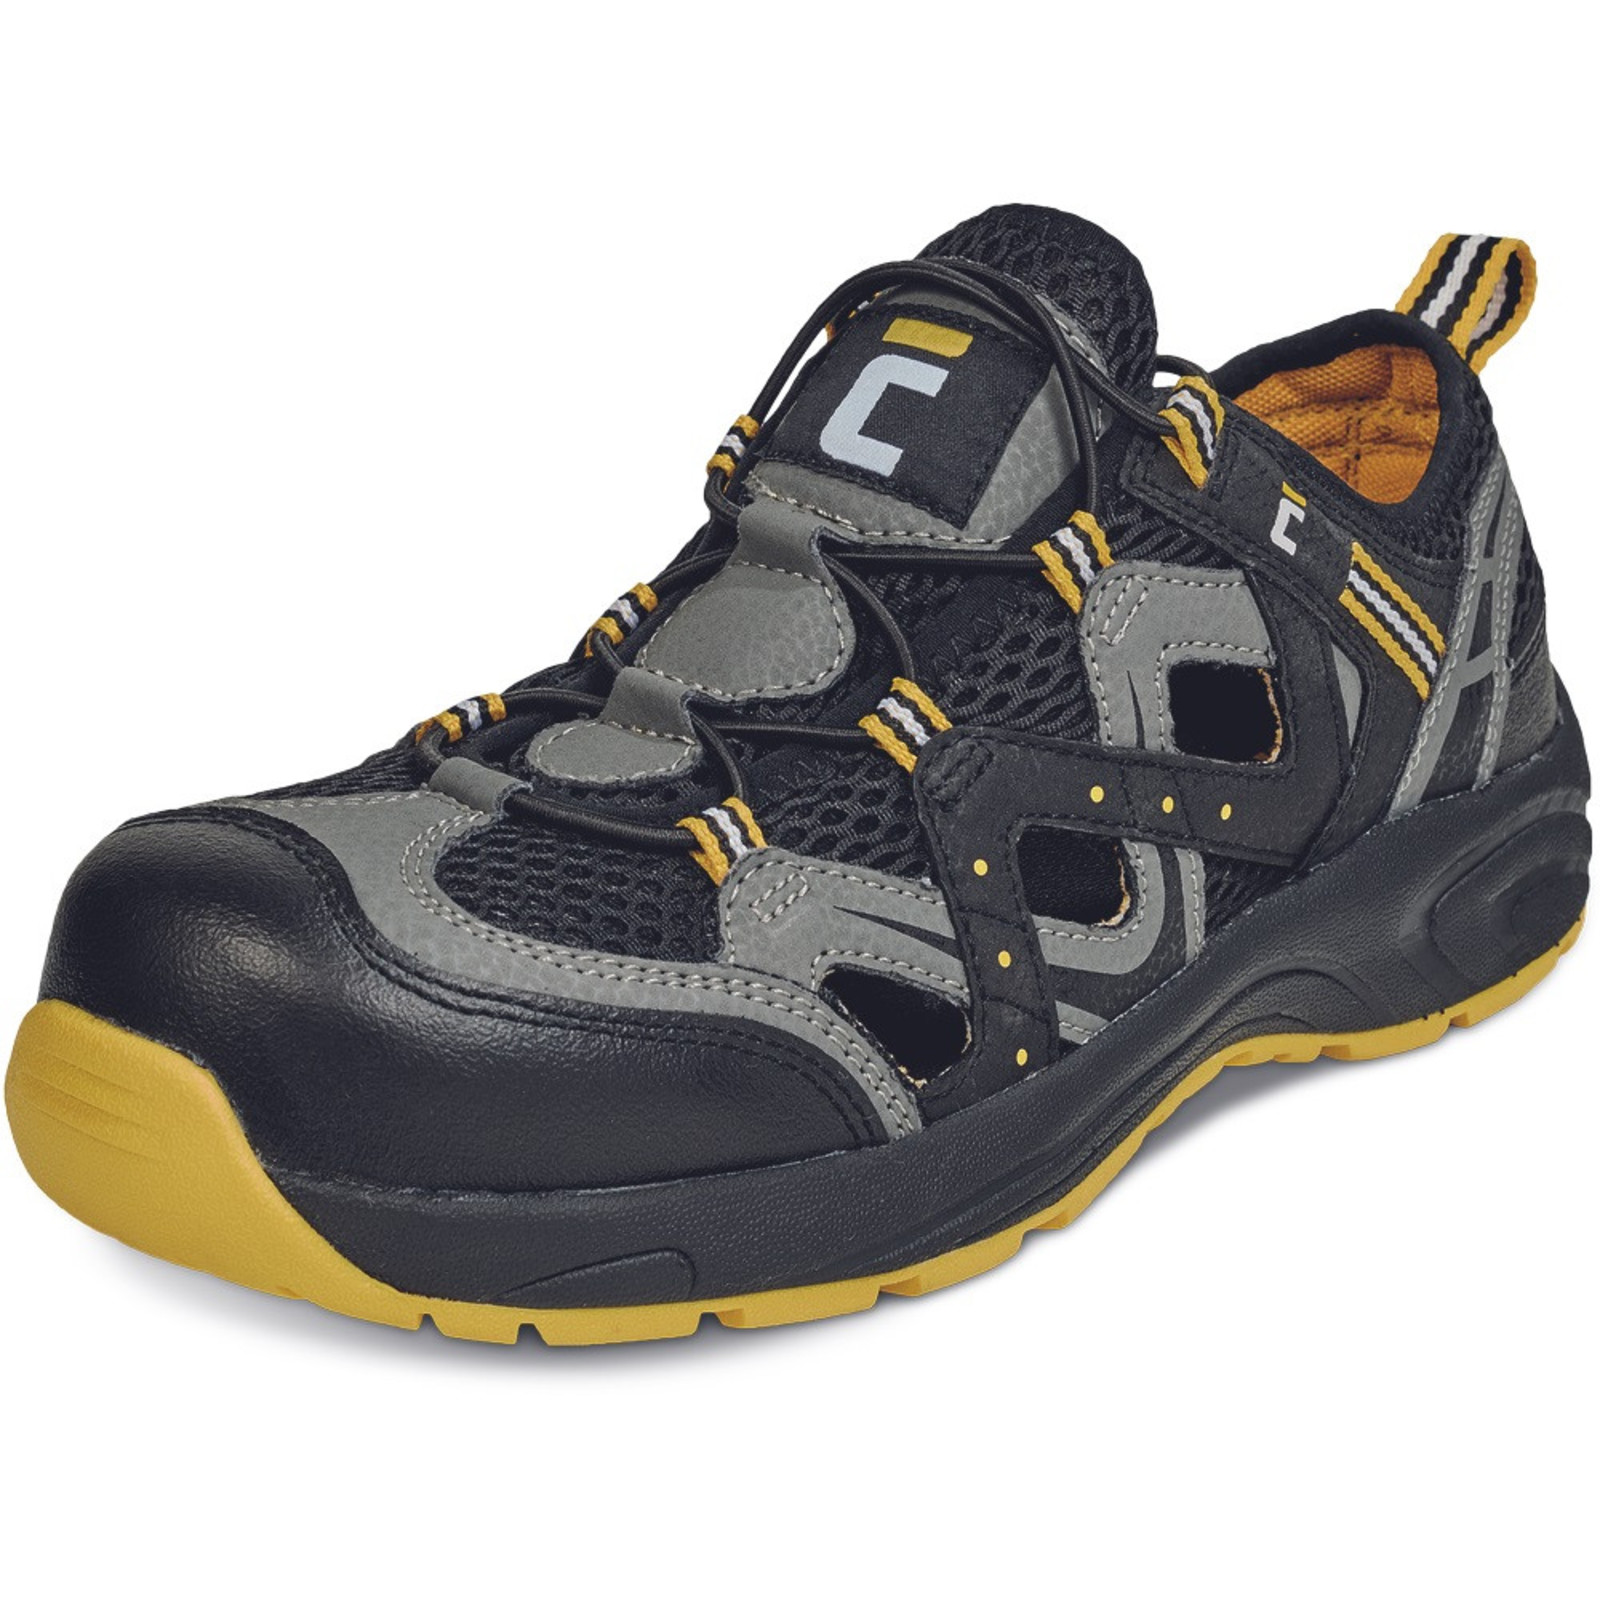 Pracovné sandále Cerva Henford O1 SRC - veľkosť: 43, farba: čierna/žltá